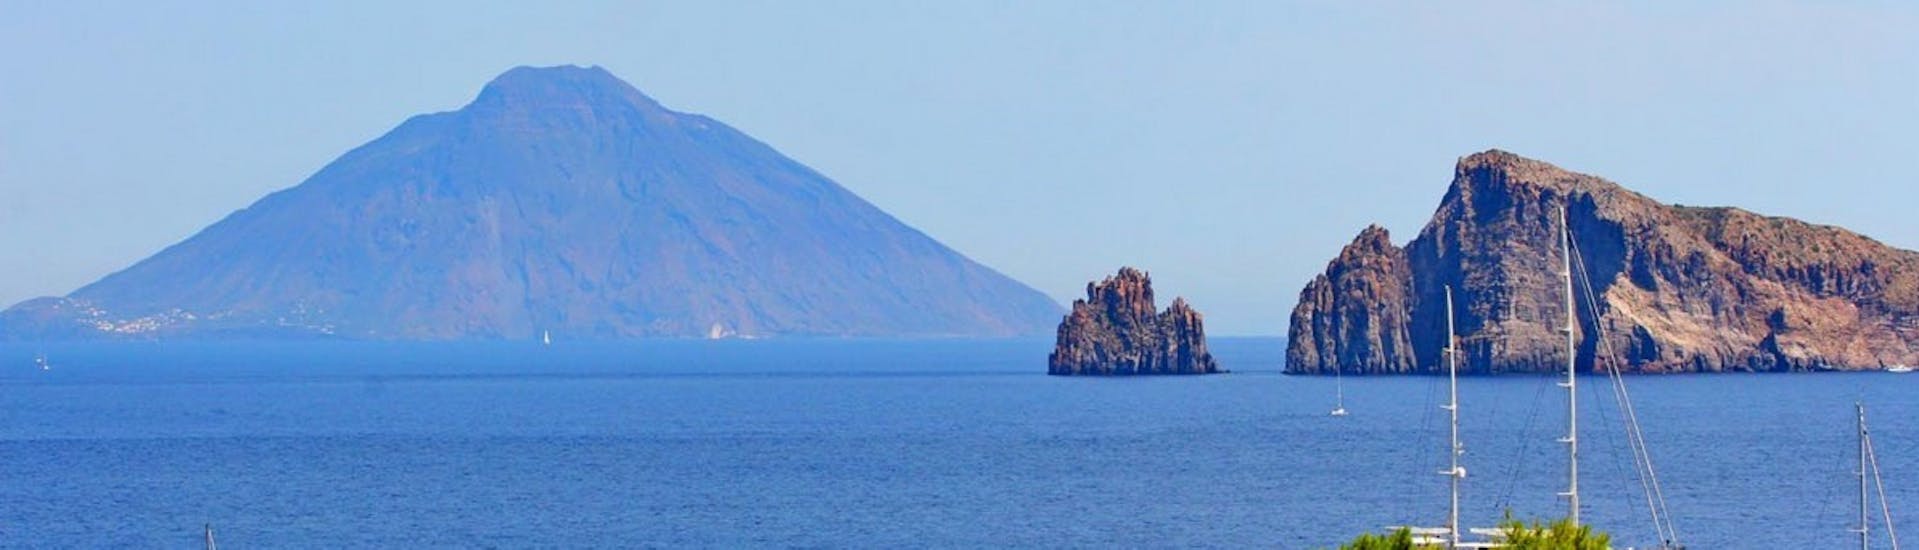 Imagen de las islas Eolias tomada durante el viaje en barco a Stromboli, Lipari y Vulcano desde Tropea.